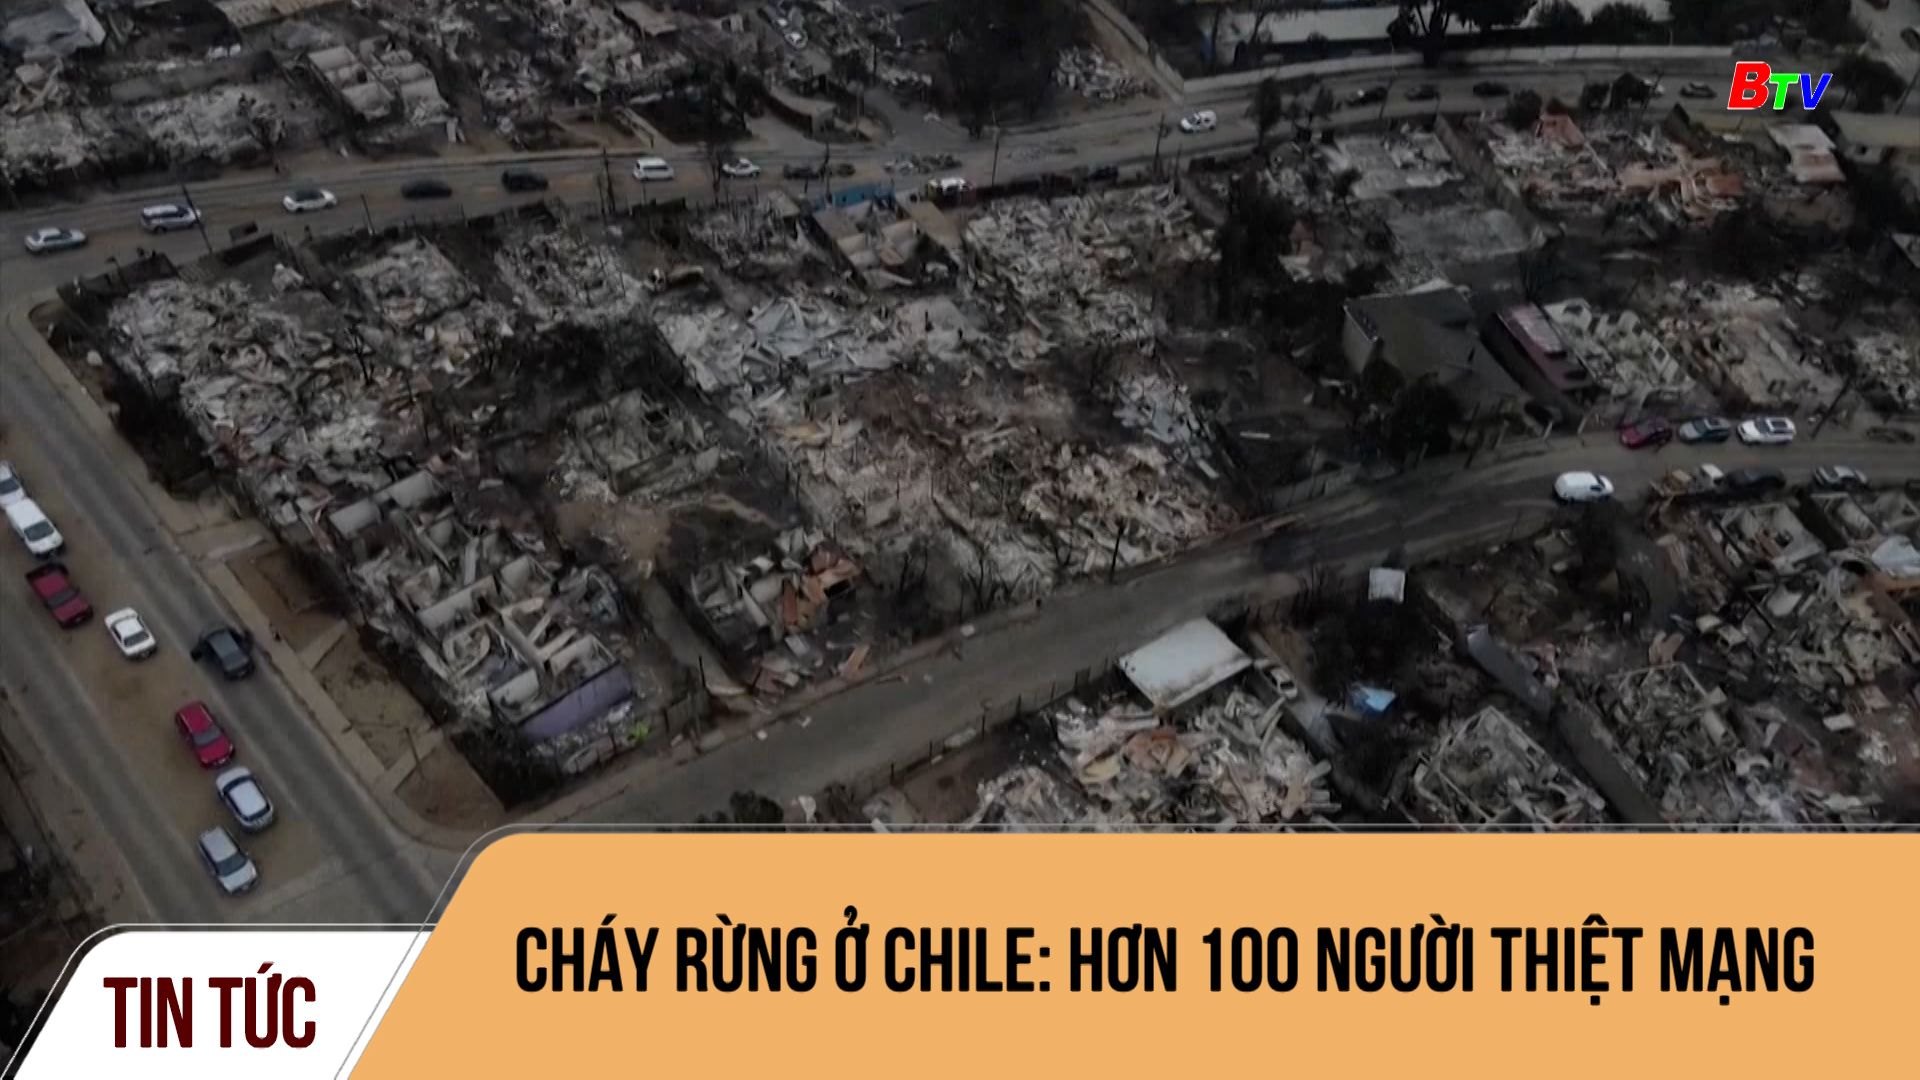 Cháy rừng ở Chile: hơn 100 người thiệt mạng